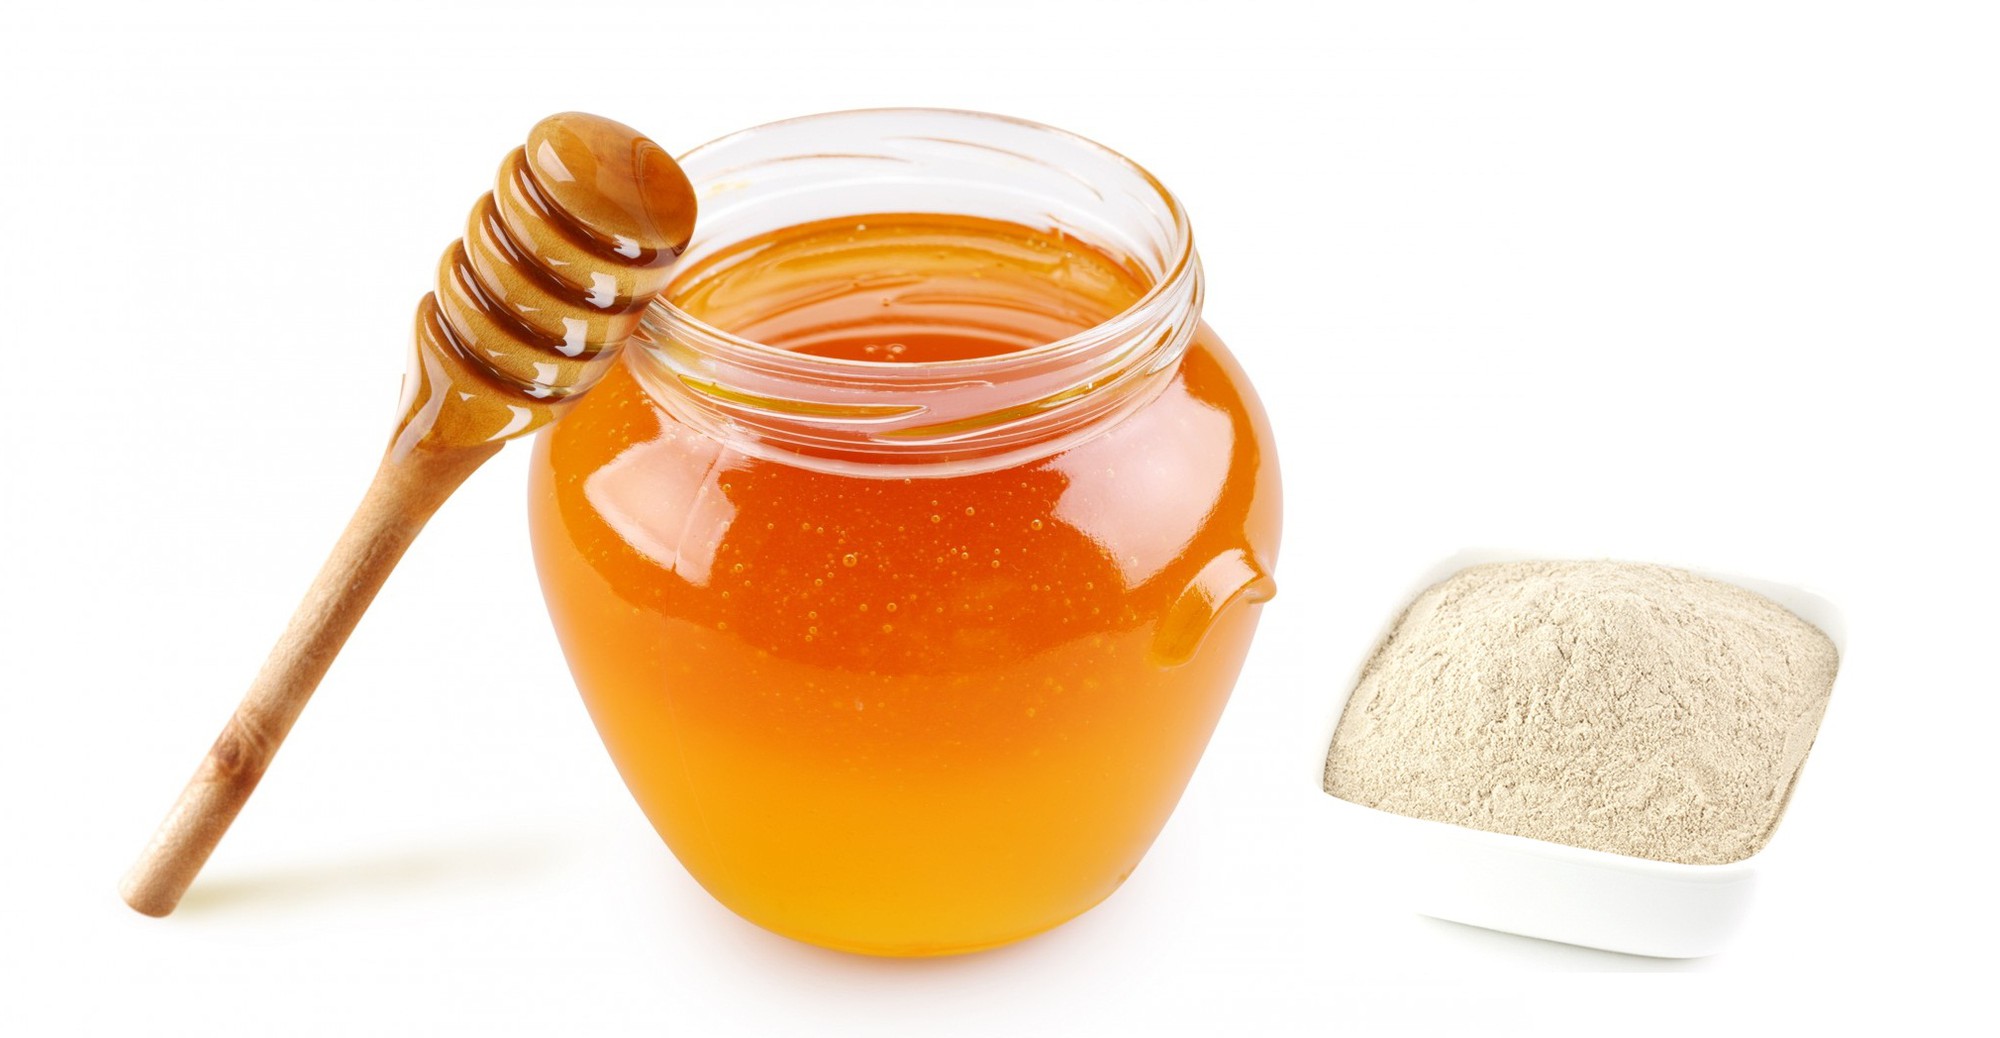 Bài thuốc dân gian: Chữa đau dạ dày bằng nghệ đen và mật ong - Ảnh 2.